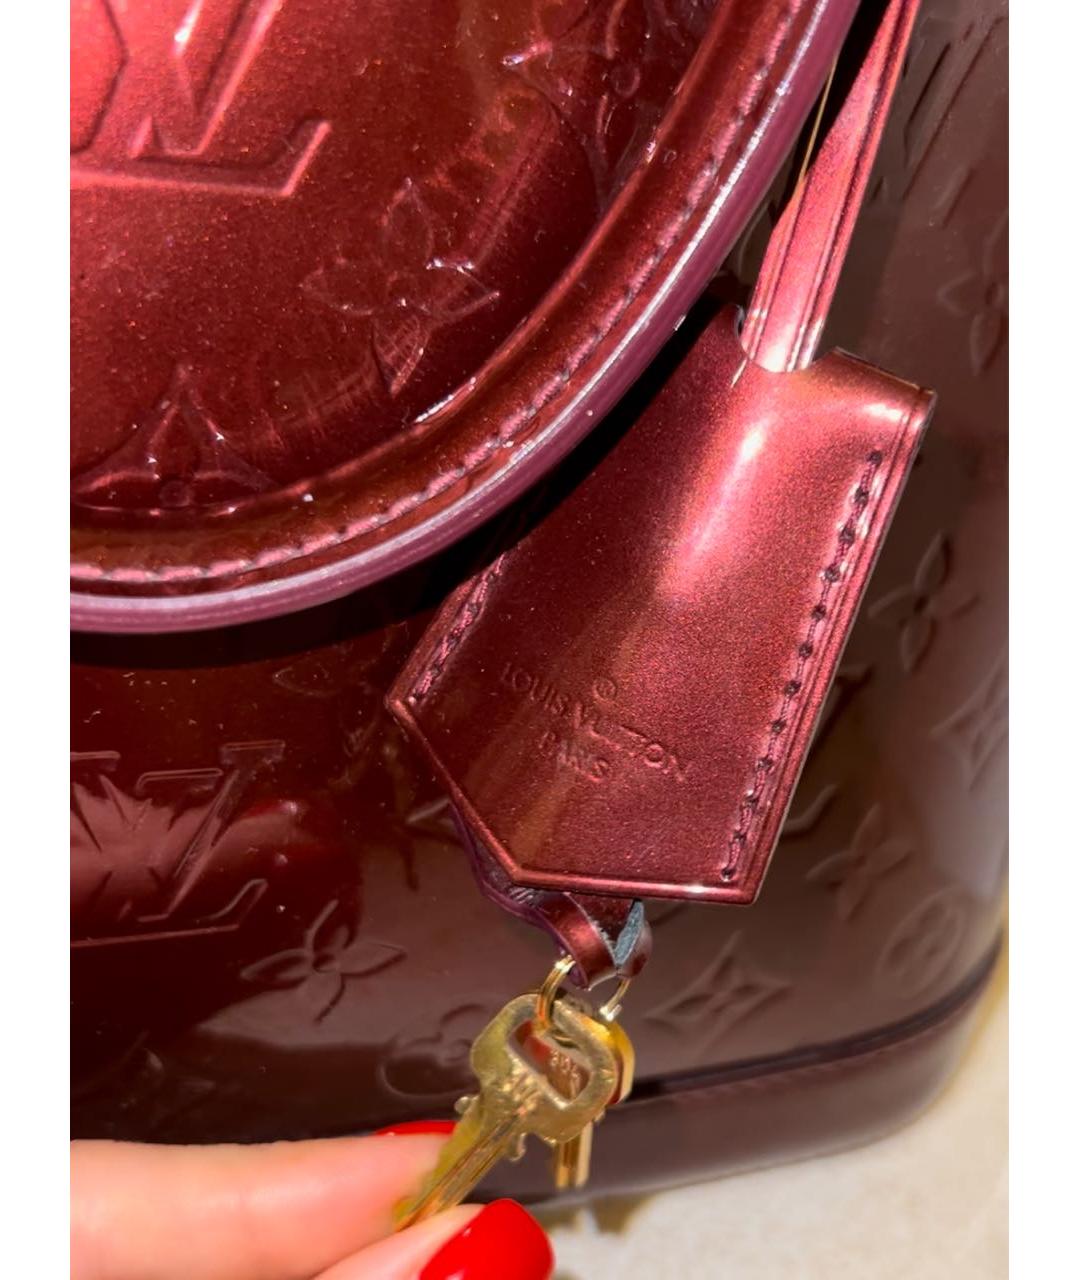 LOUIS VUITTON PRE-OWNED Бордовая сумка с короткими ручками из лакированной кожи, фото 3